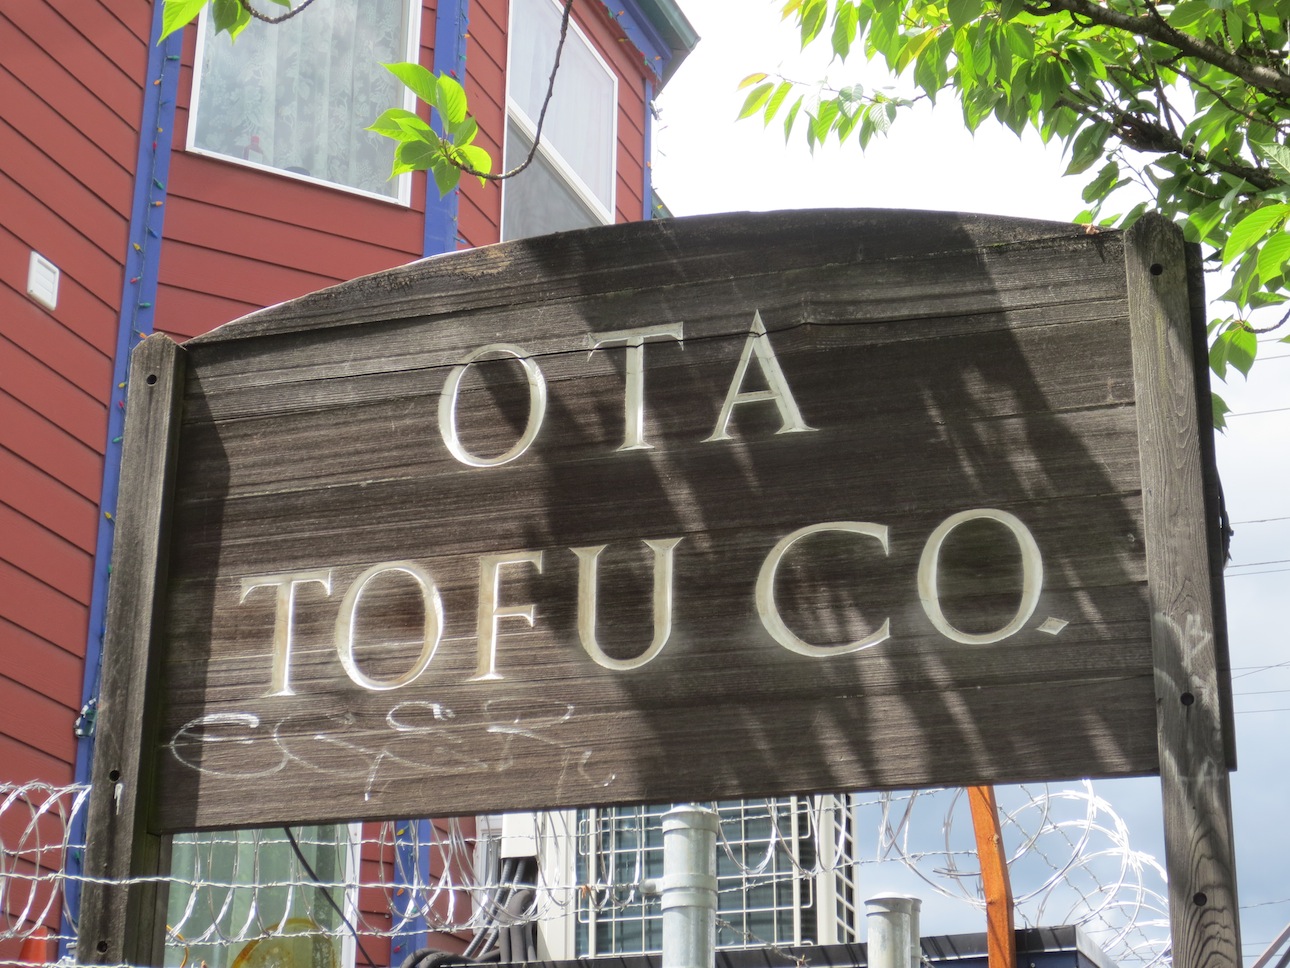 Tofu sign in Buckman Neighborhood.